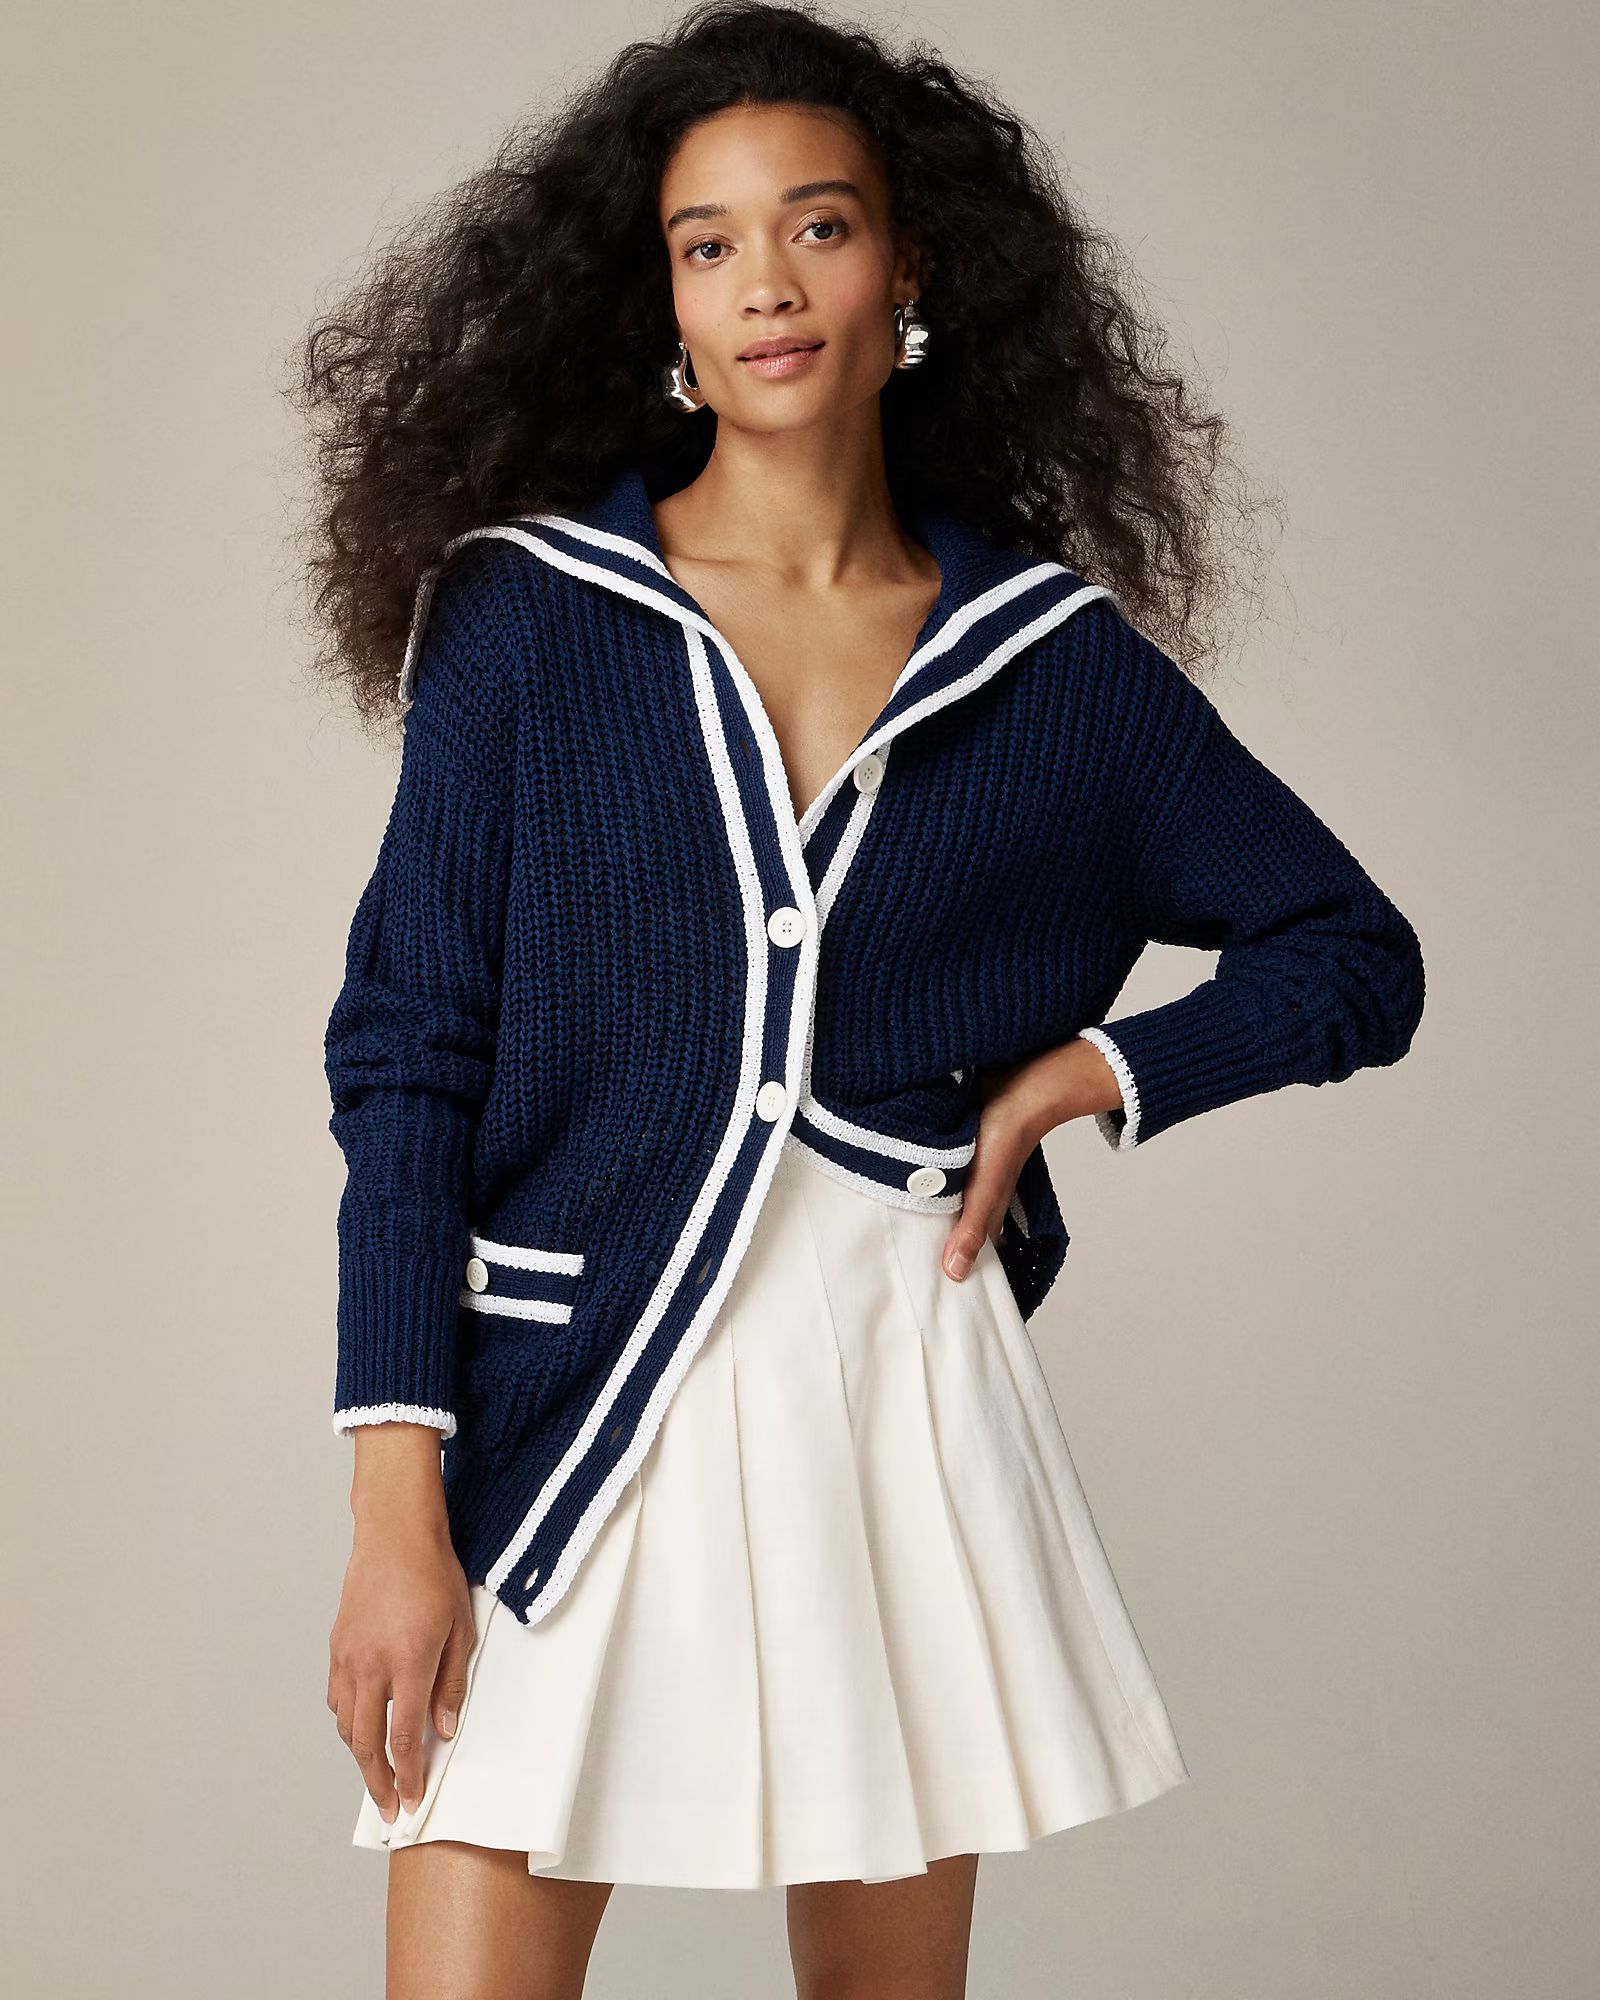 Textured sailor cardigan sweater | J.Crew US